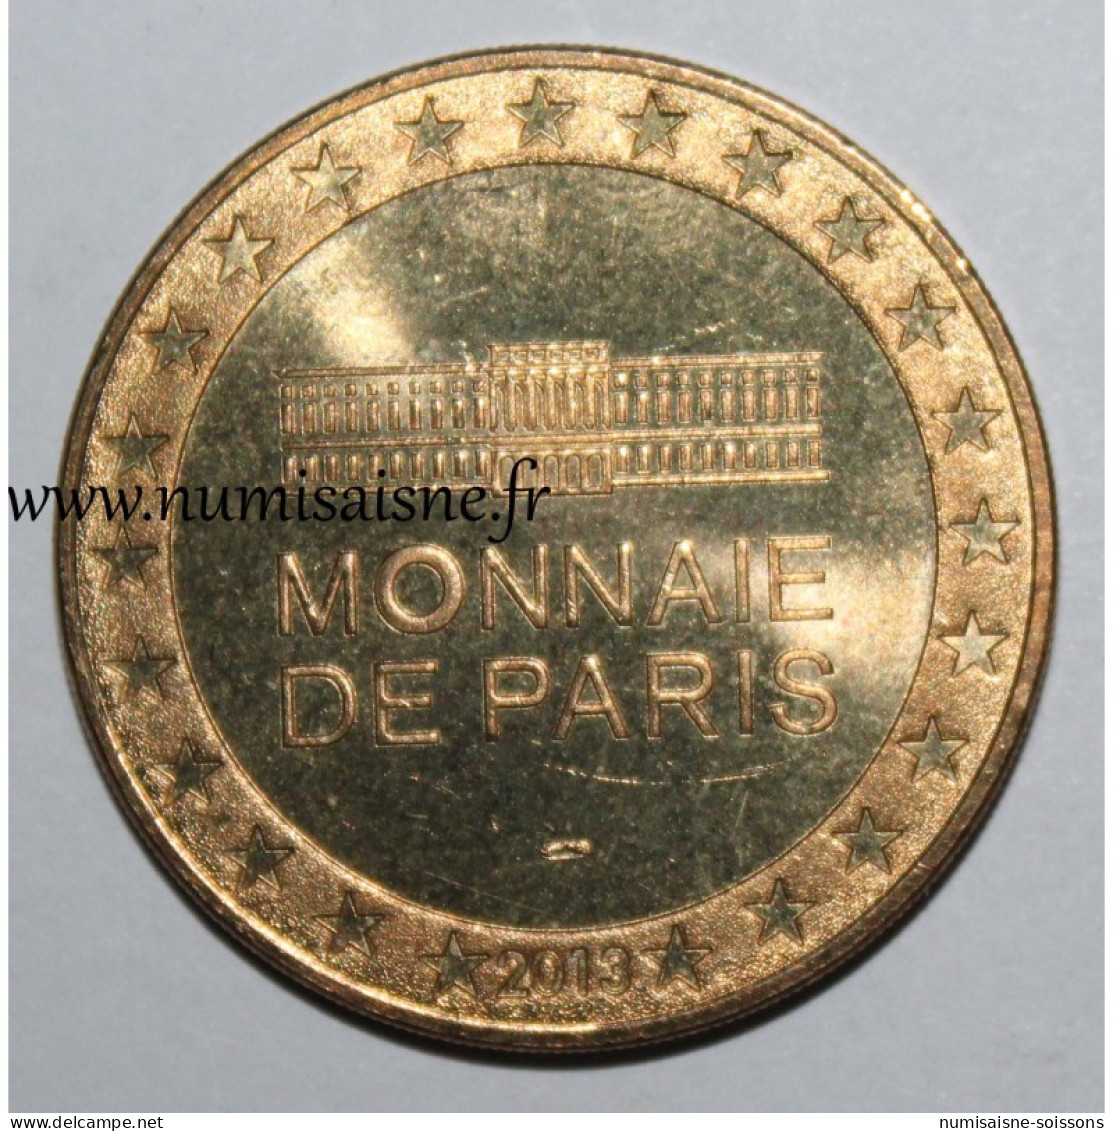 974 - RÉUNION - Parc National - Monnaie De Paris - 2013 - 2013